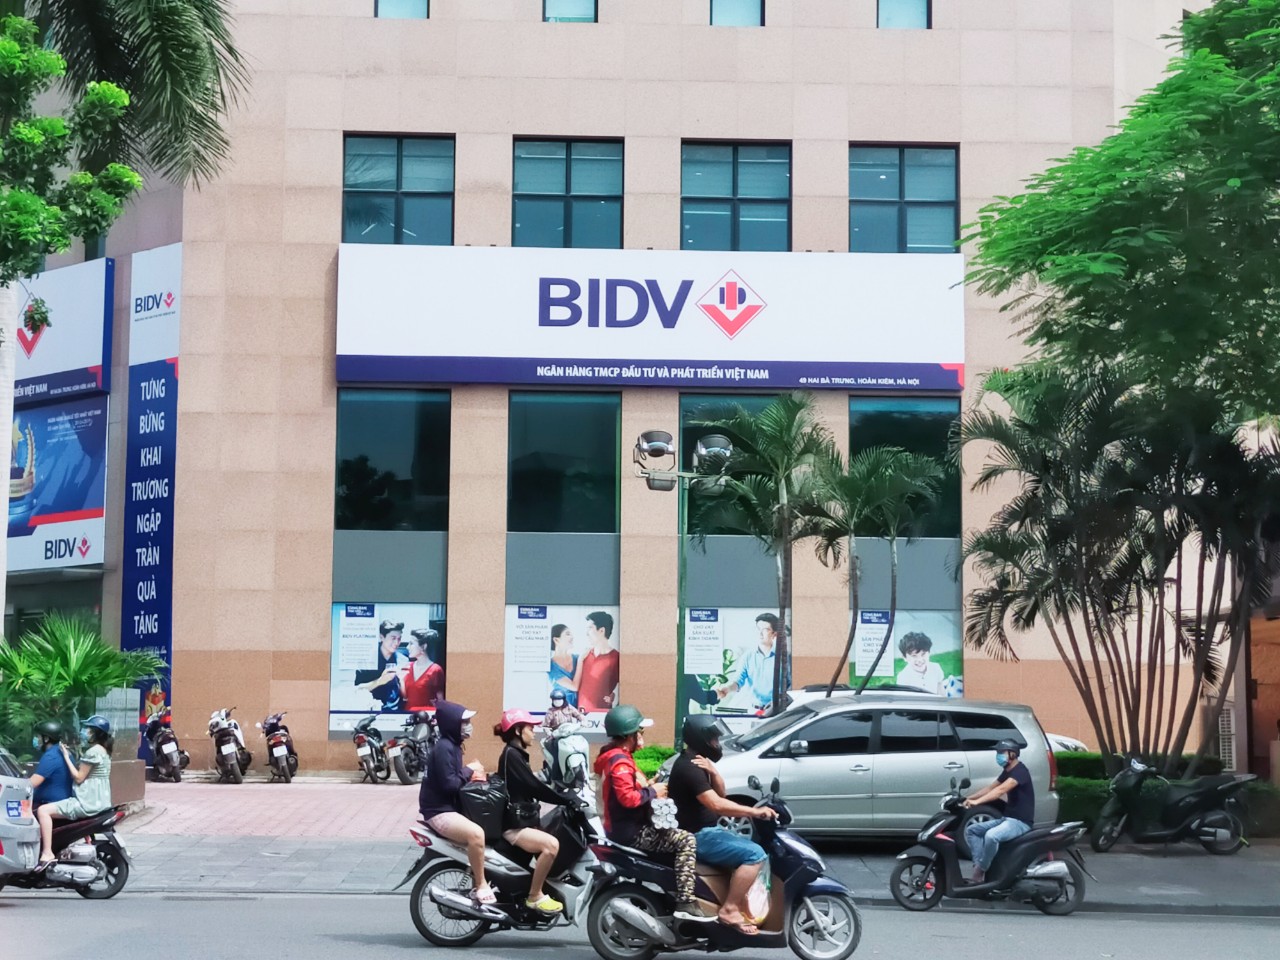 BIDV chuẩn bị nhận gần 48 tỉ đồng cổ tức từ BIC - Ảnh 1.